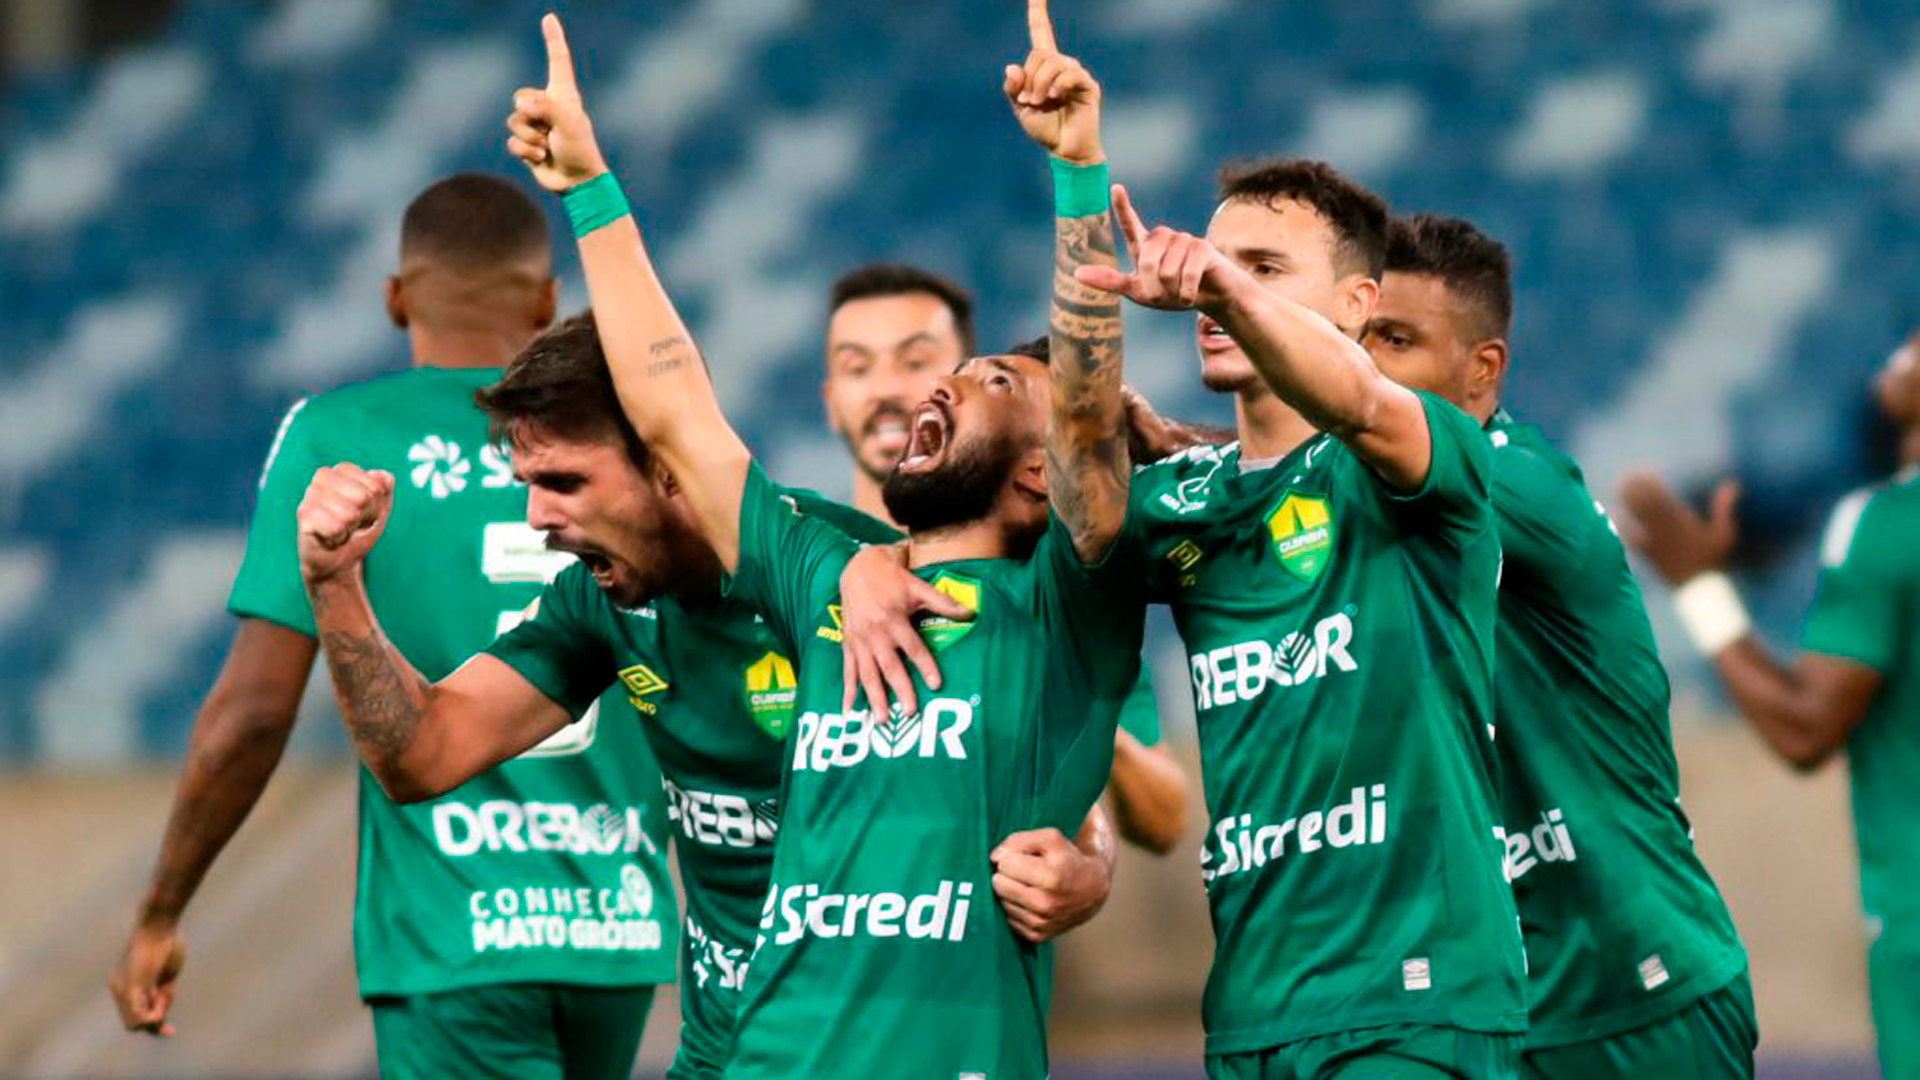 19 dos 20 times que disputam a Série A do Campeonato Brasileiro recebem patrocínio de alguma casa de apostas